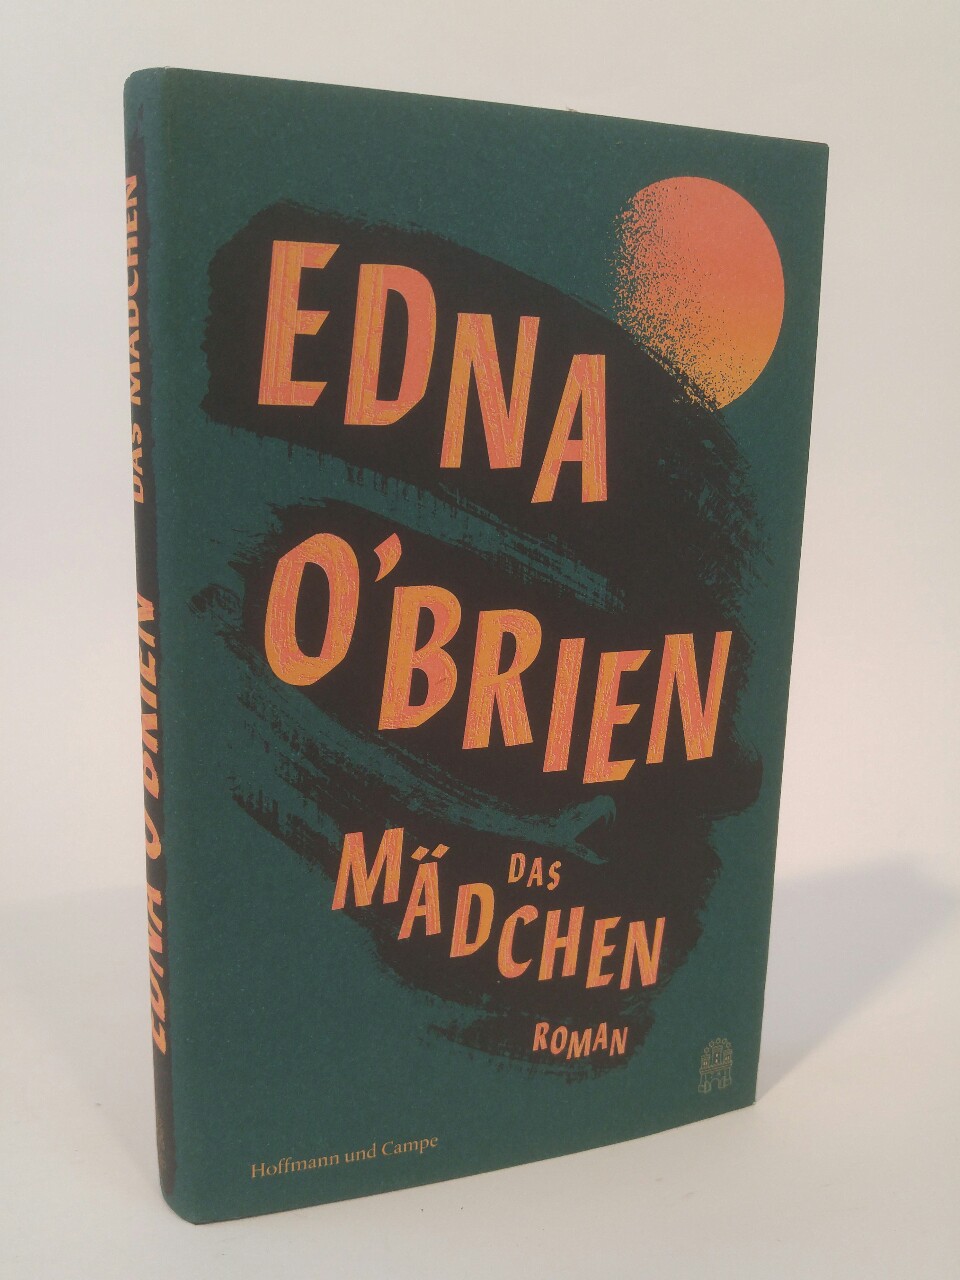 Das Mädchen Roman - O'Brien, Edna